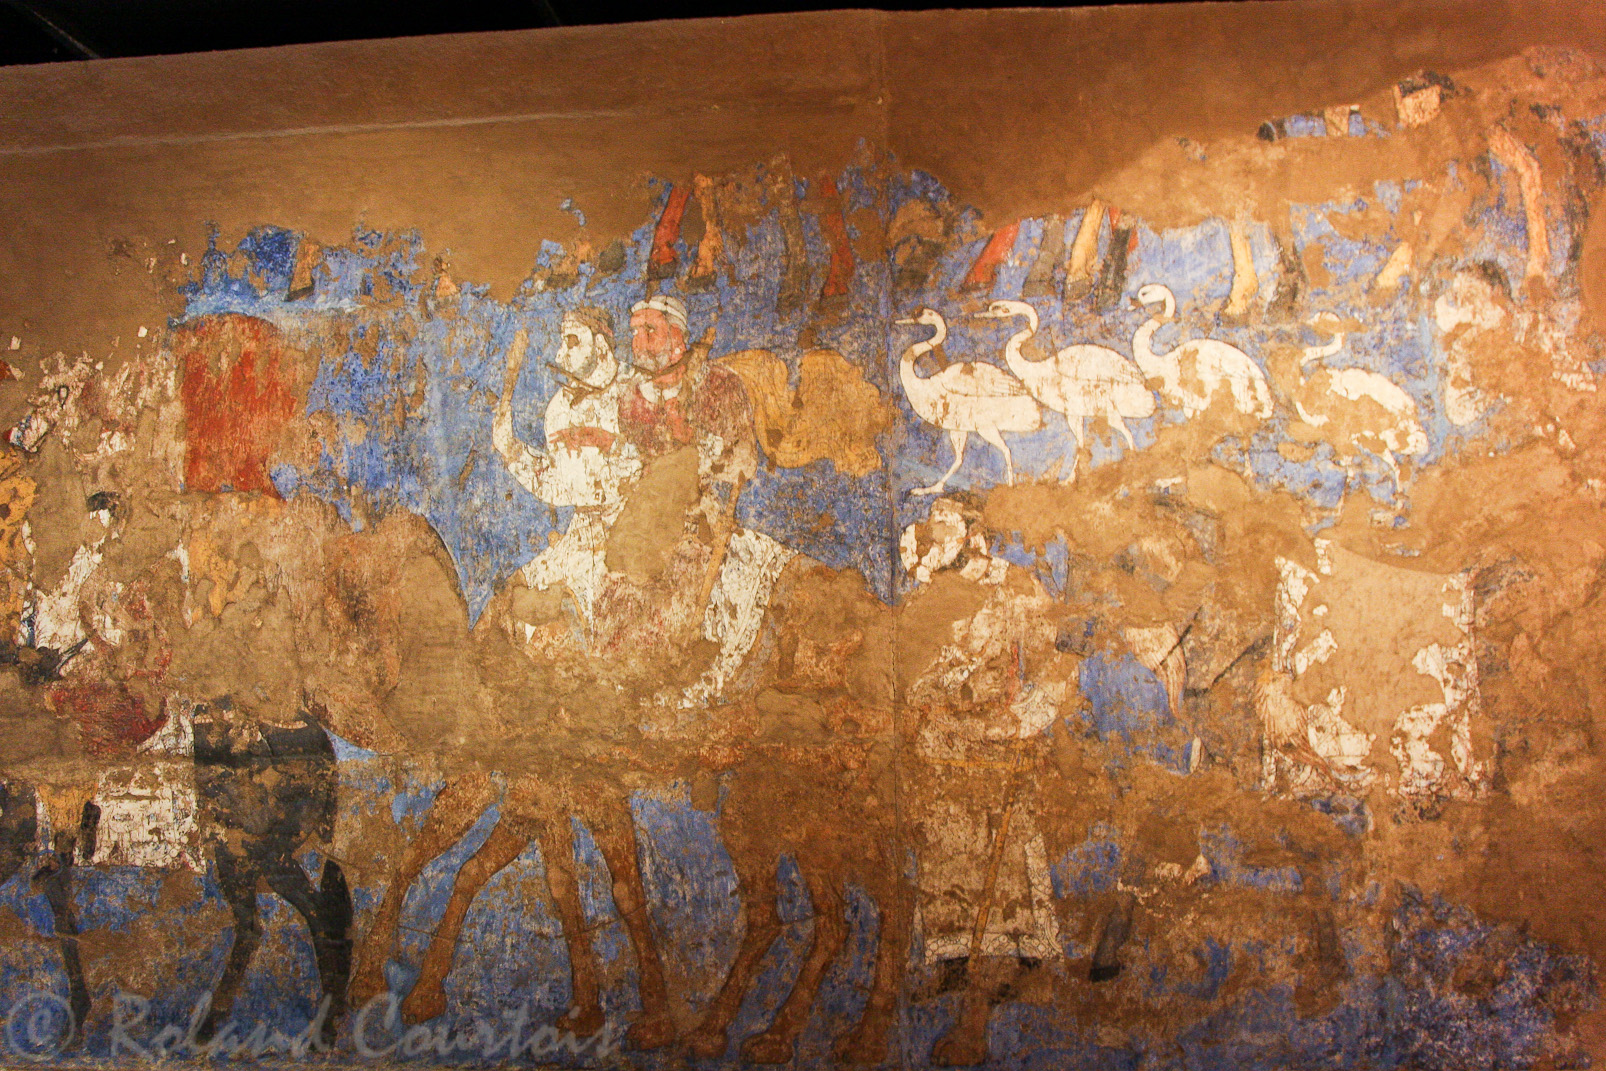 Le musée d'Afrasiab présente une série de fresques du 7ième siècle représentant le récit épique de la splendeur régnant à la cour.